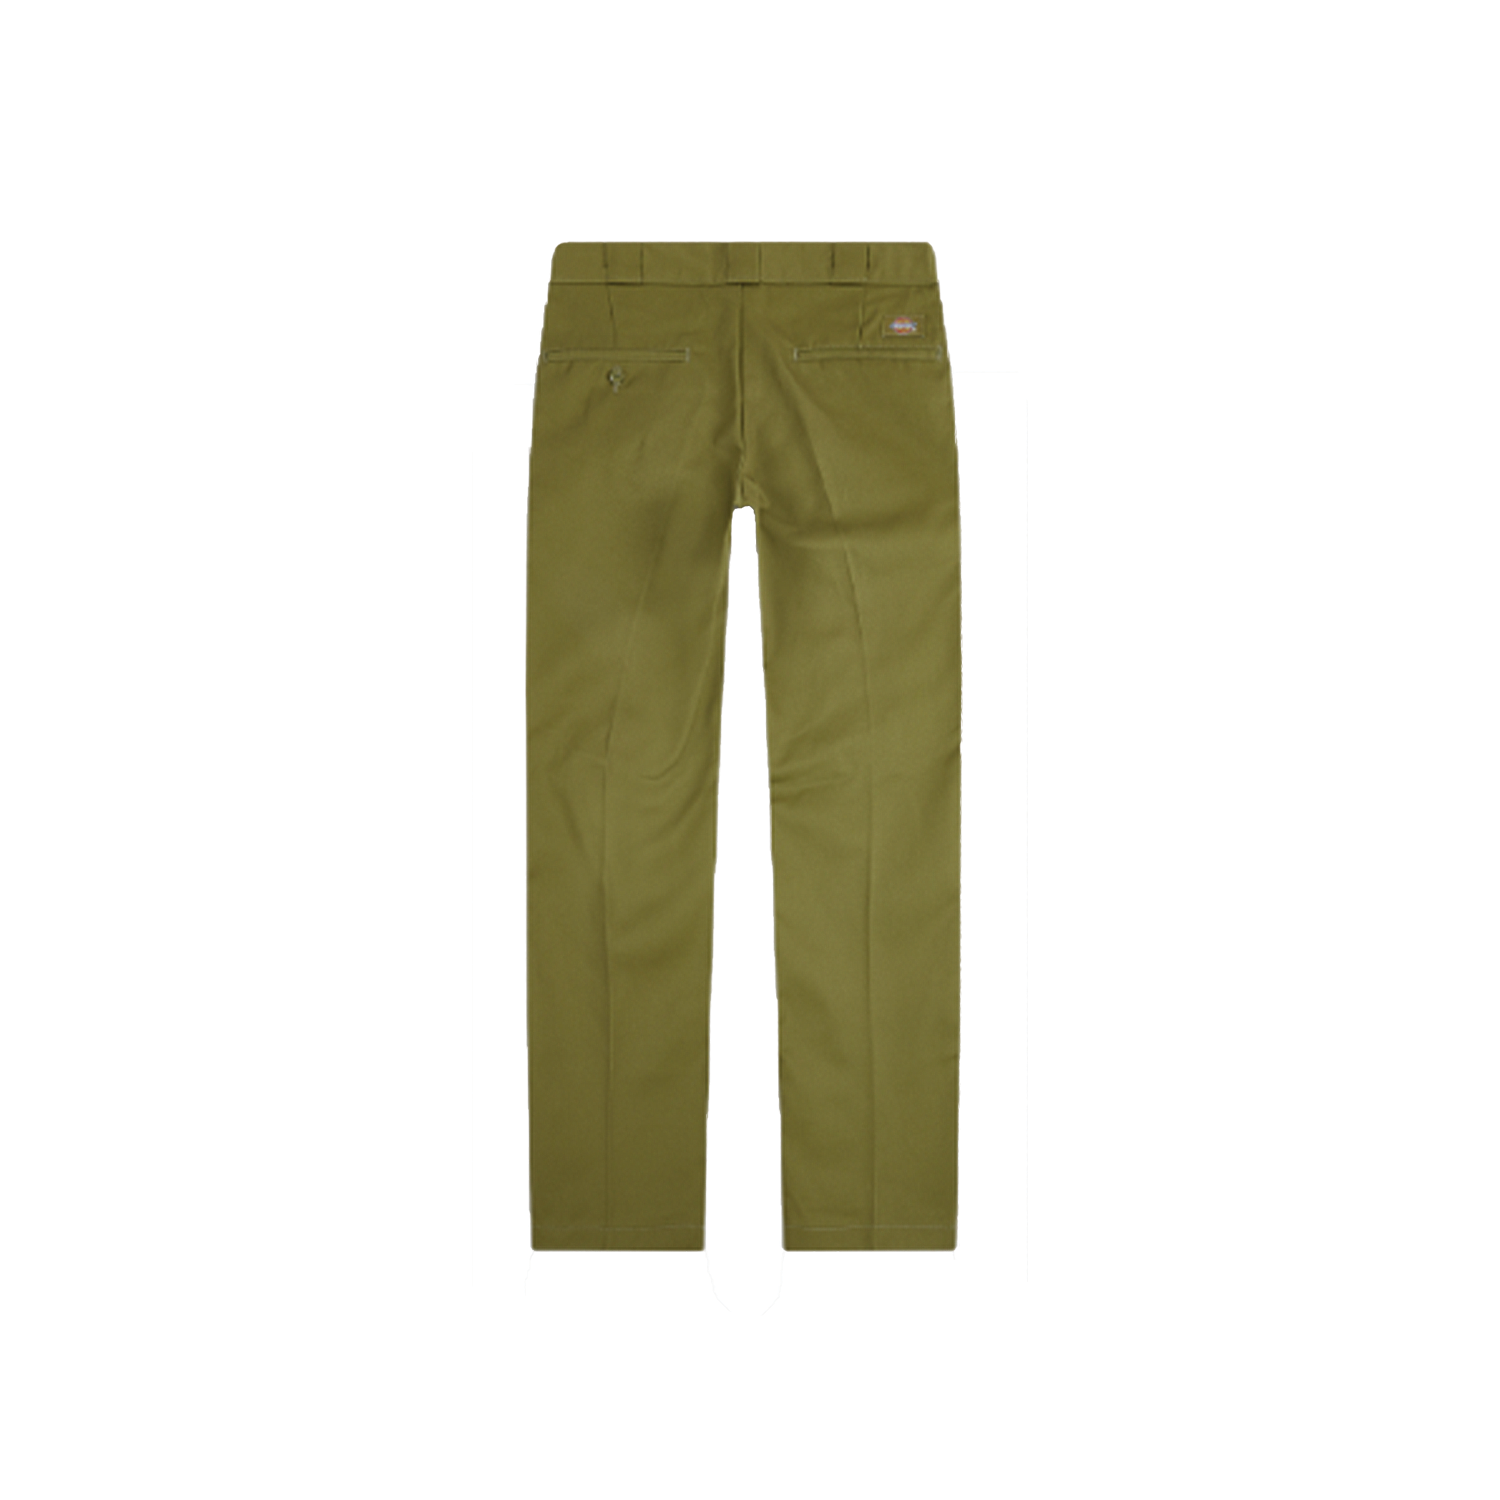 Dickies '67 Regular Fit Double Knee Work Pants - Olive Green